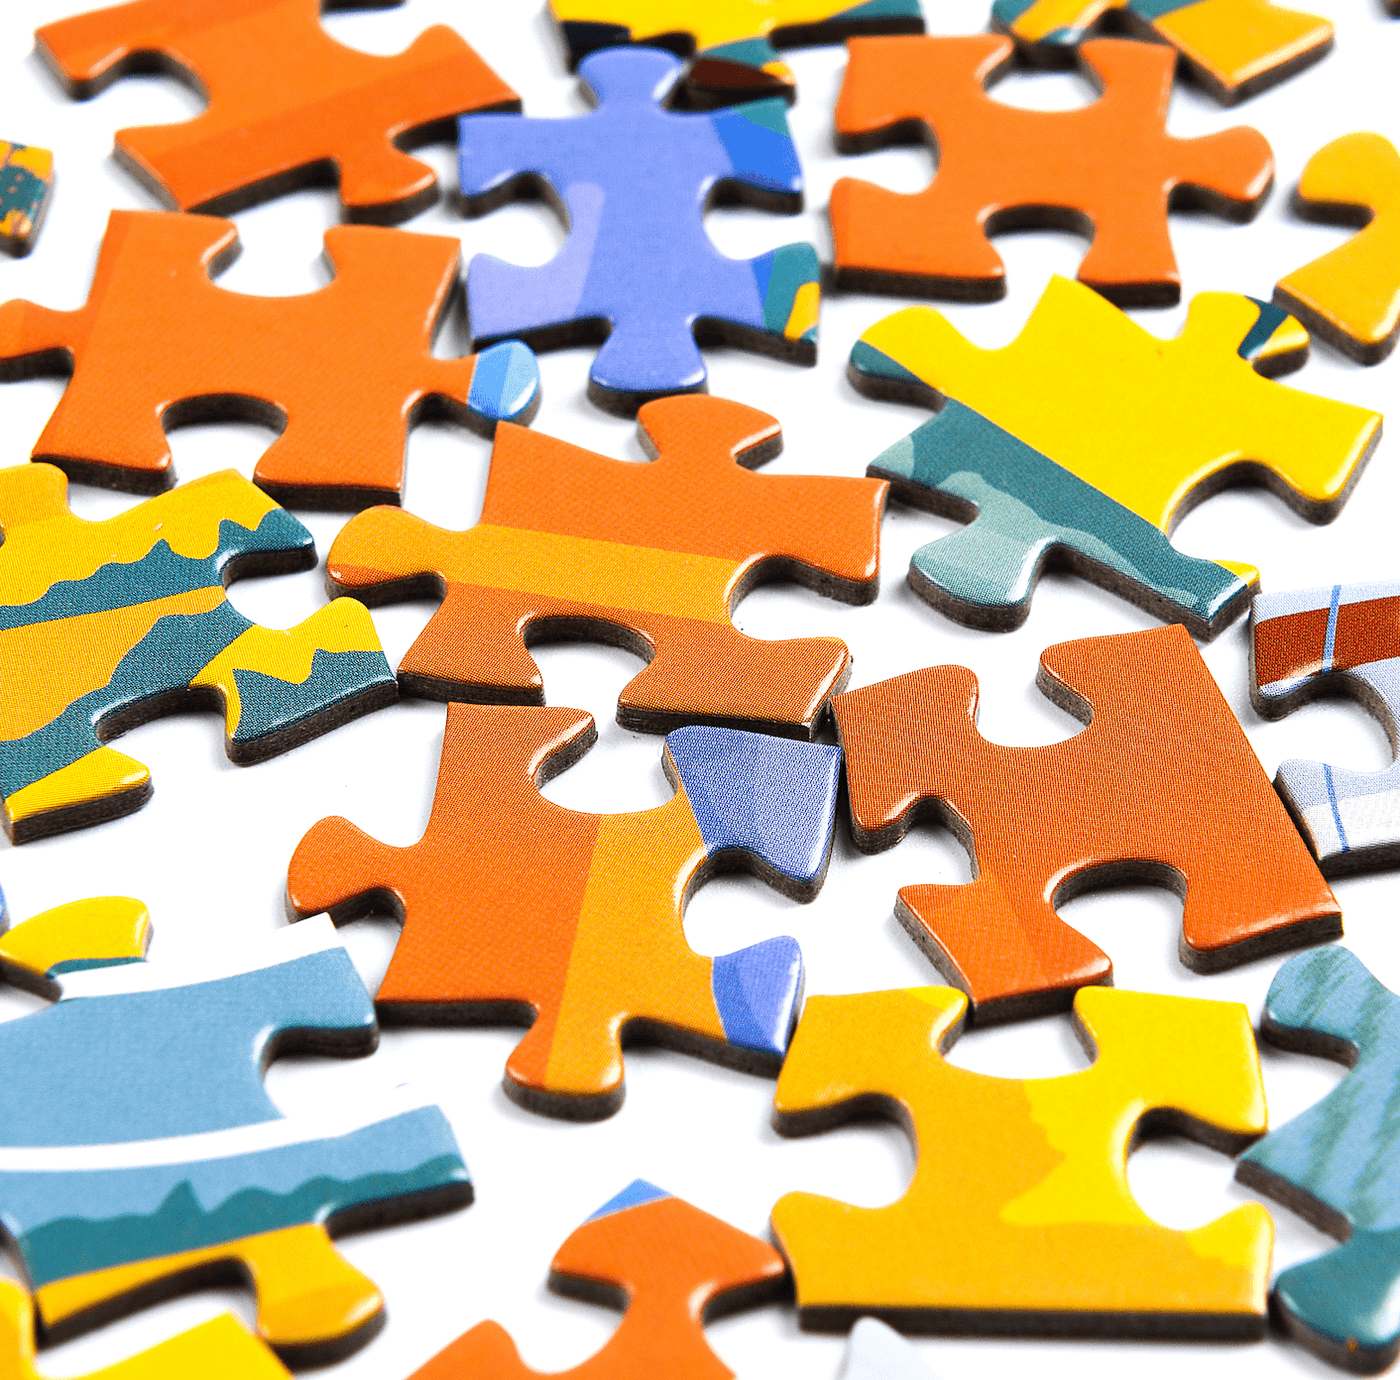 AIRPLANE | 1,000 Piece Jigsaw Puzzle